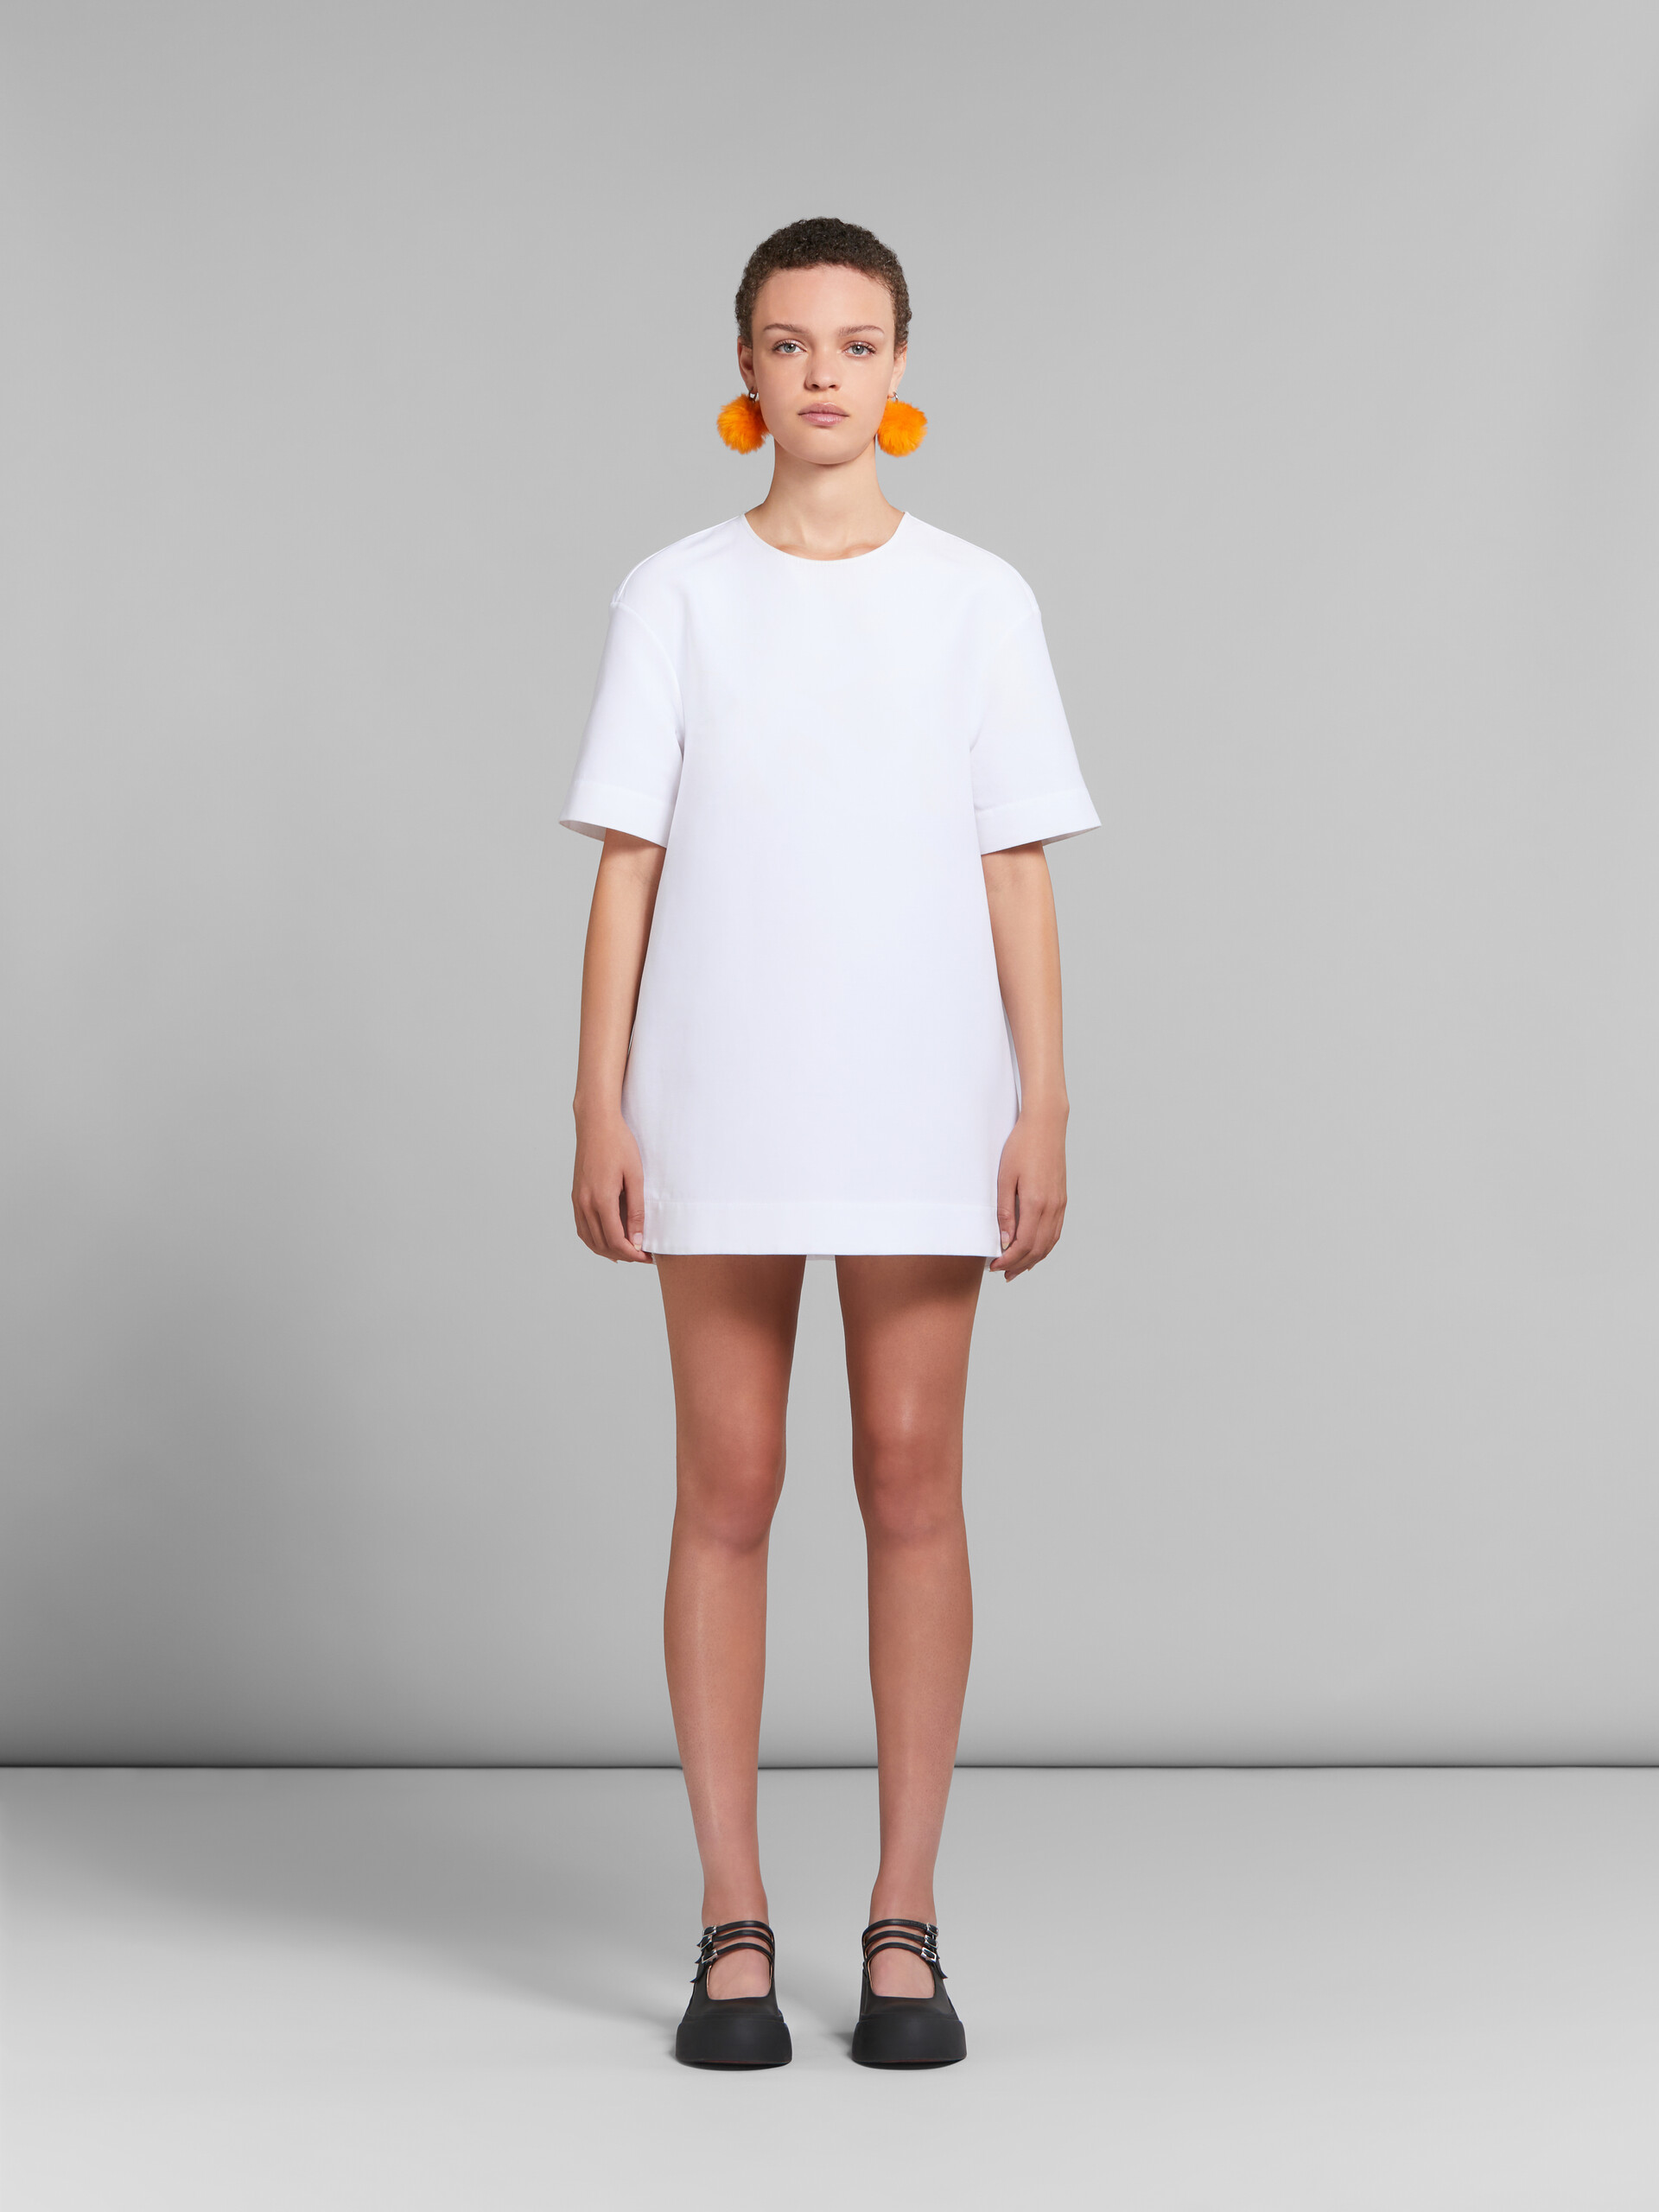 Vestido de cady blanco de corte mini cocoon - Vestidos - Image 2